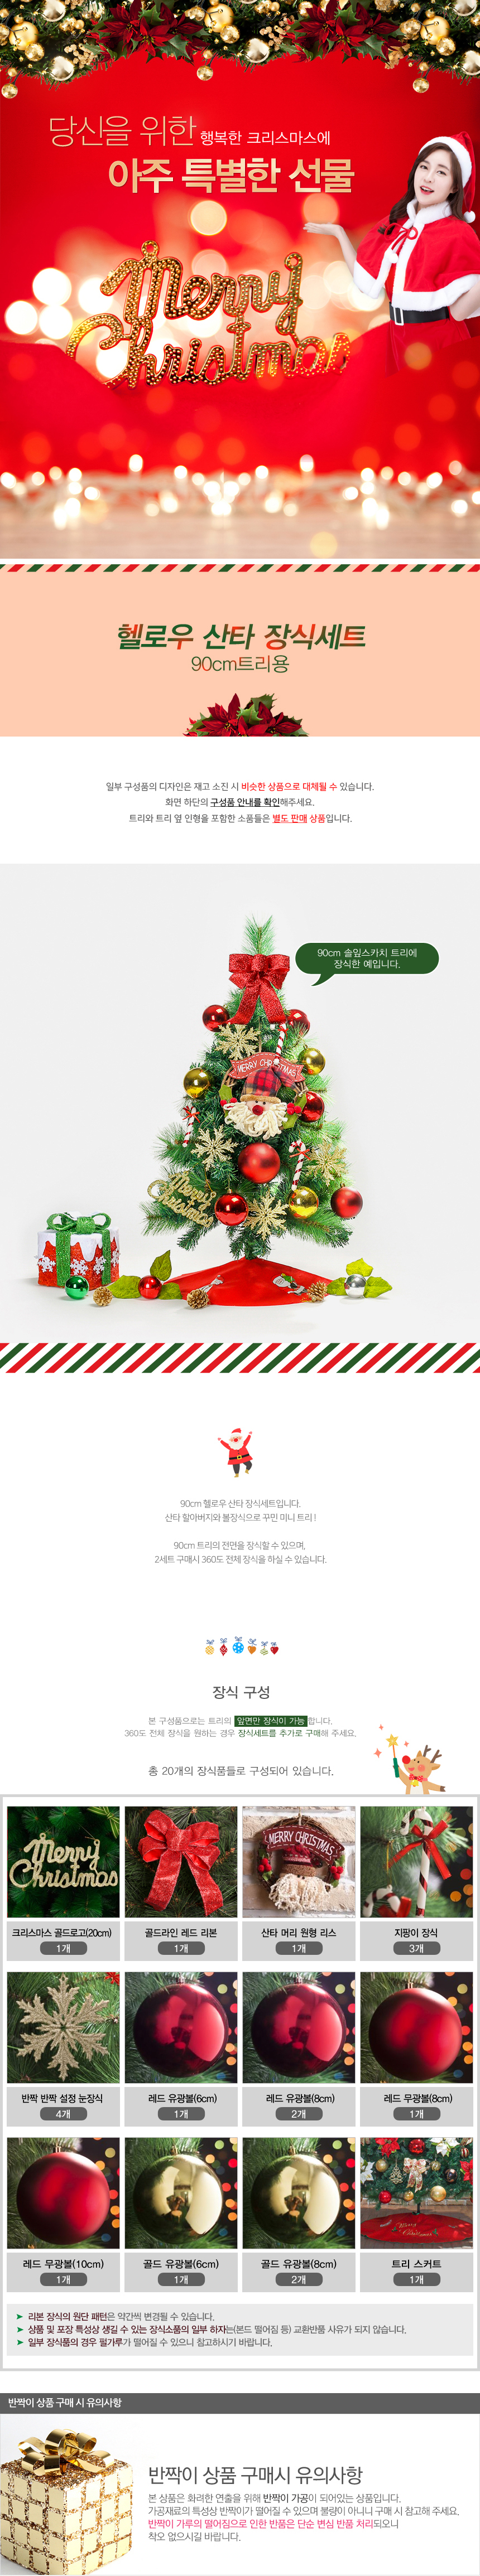 크리스마스 트리장식세트 오너먼트 헬로우 산타 90cm